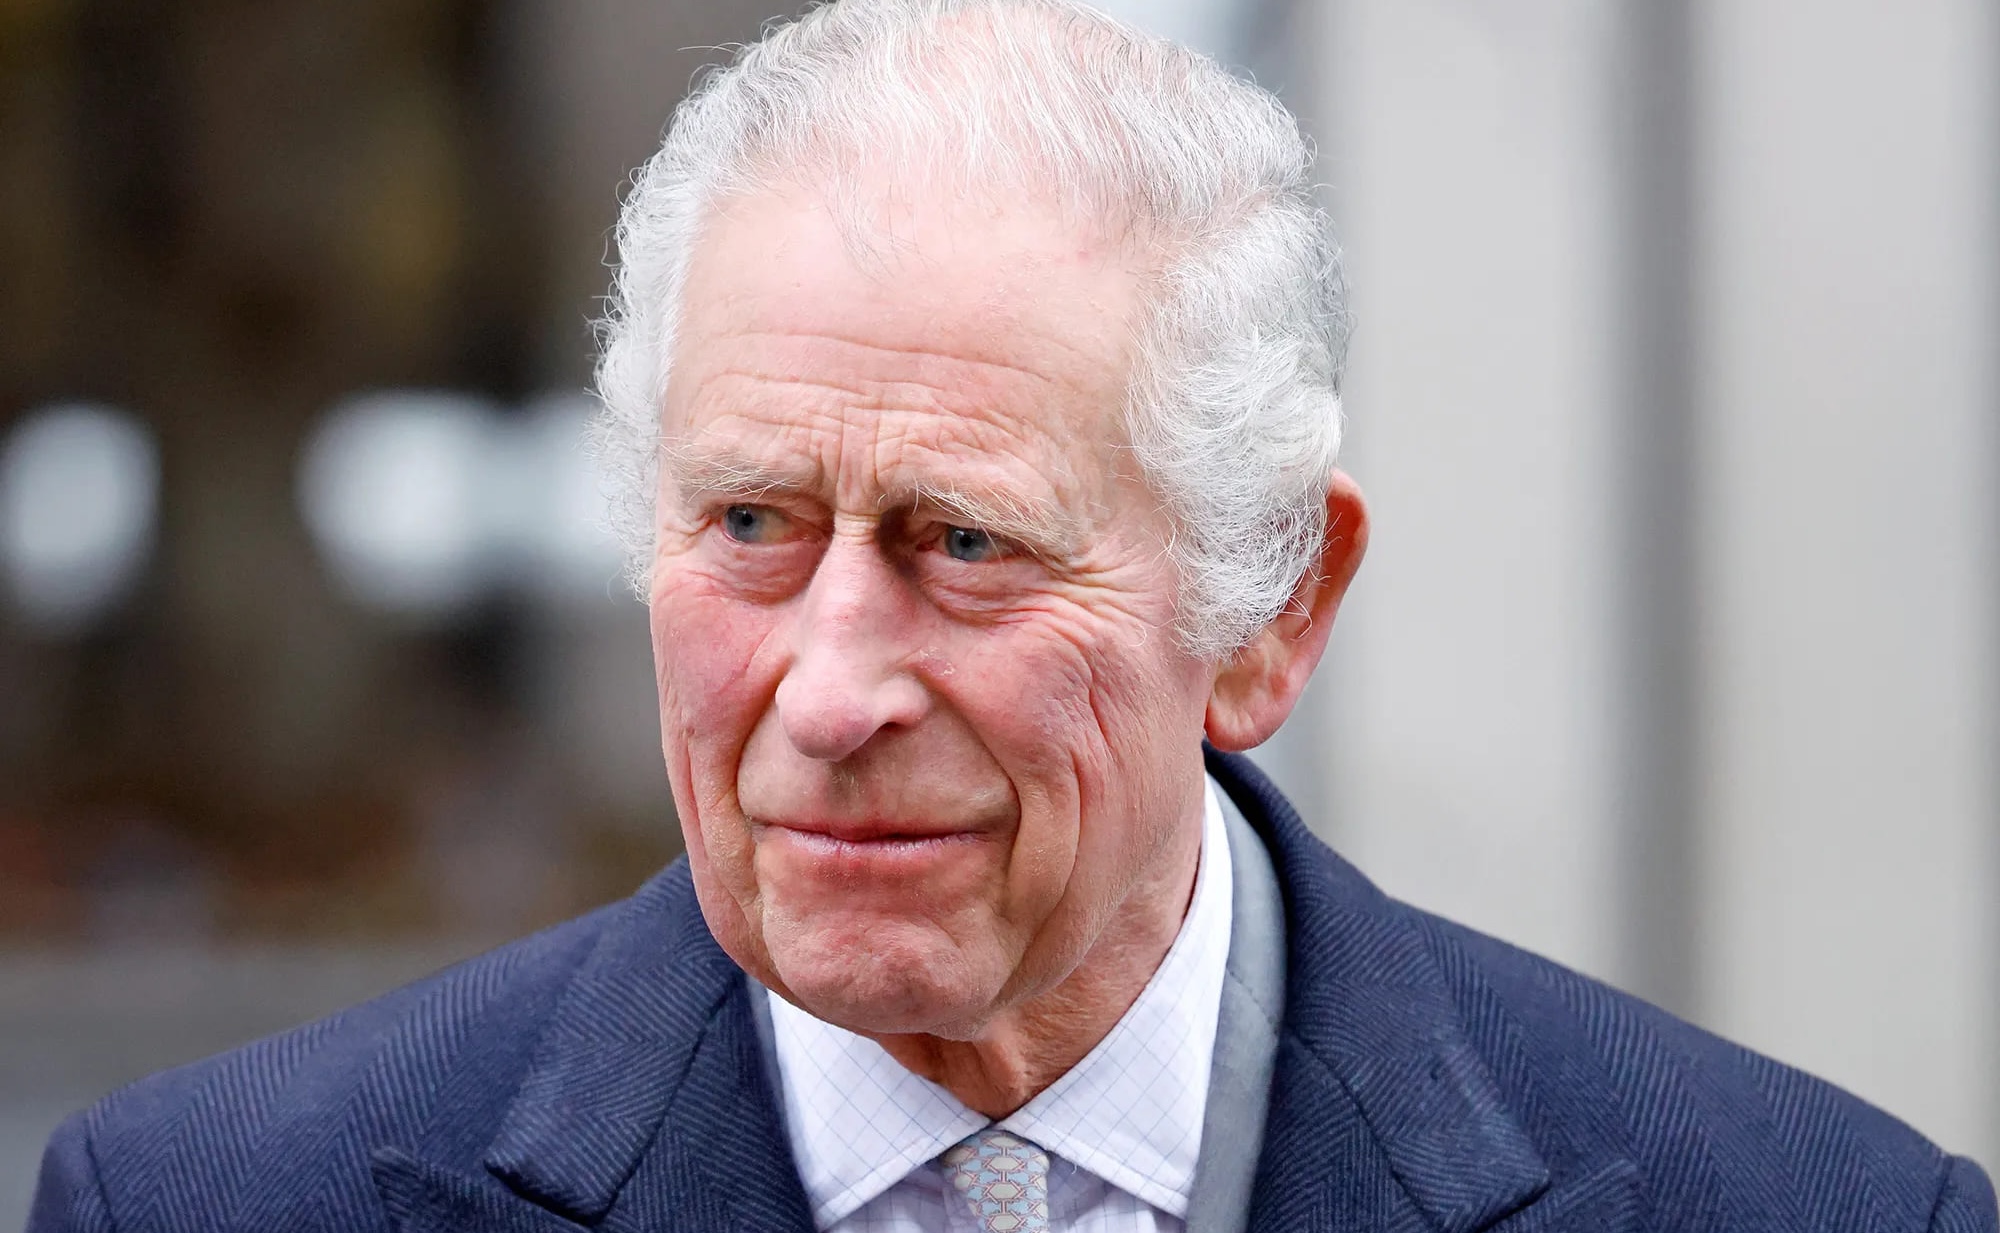 Rey Carlos III revela extraño efecto secundario del tratamiento contra el cáncer